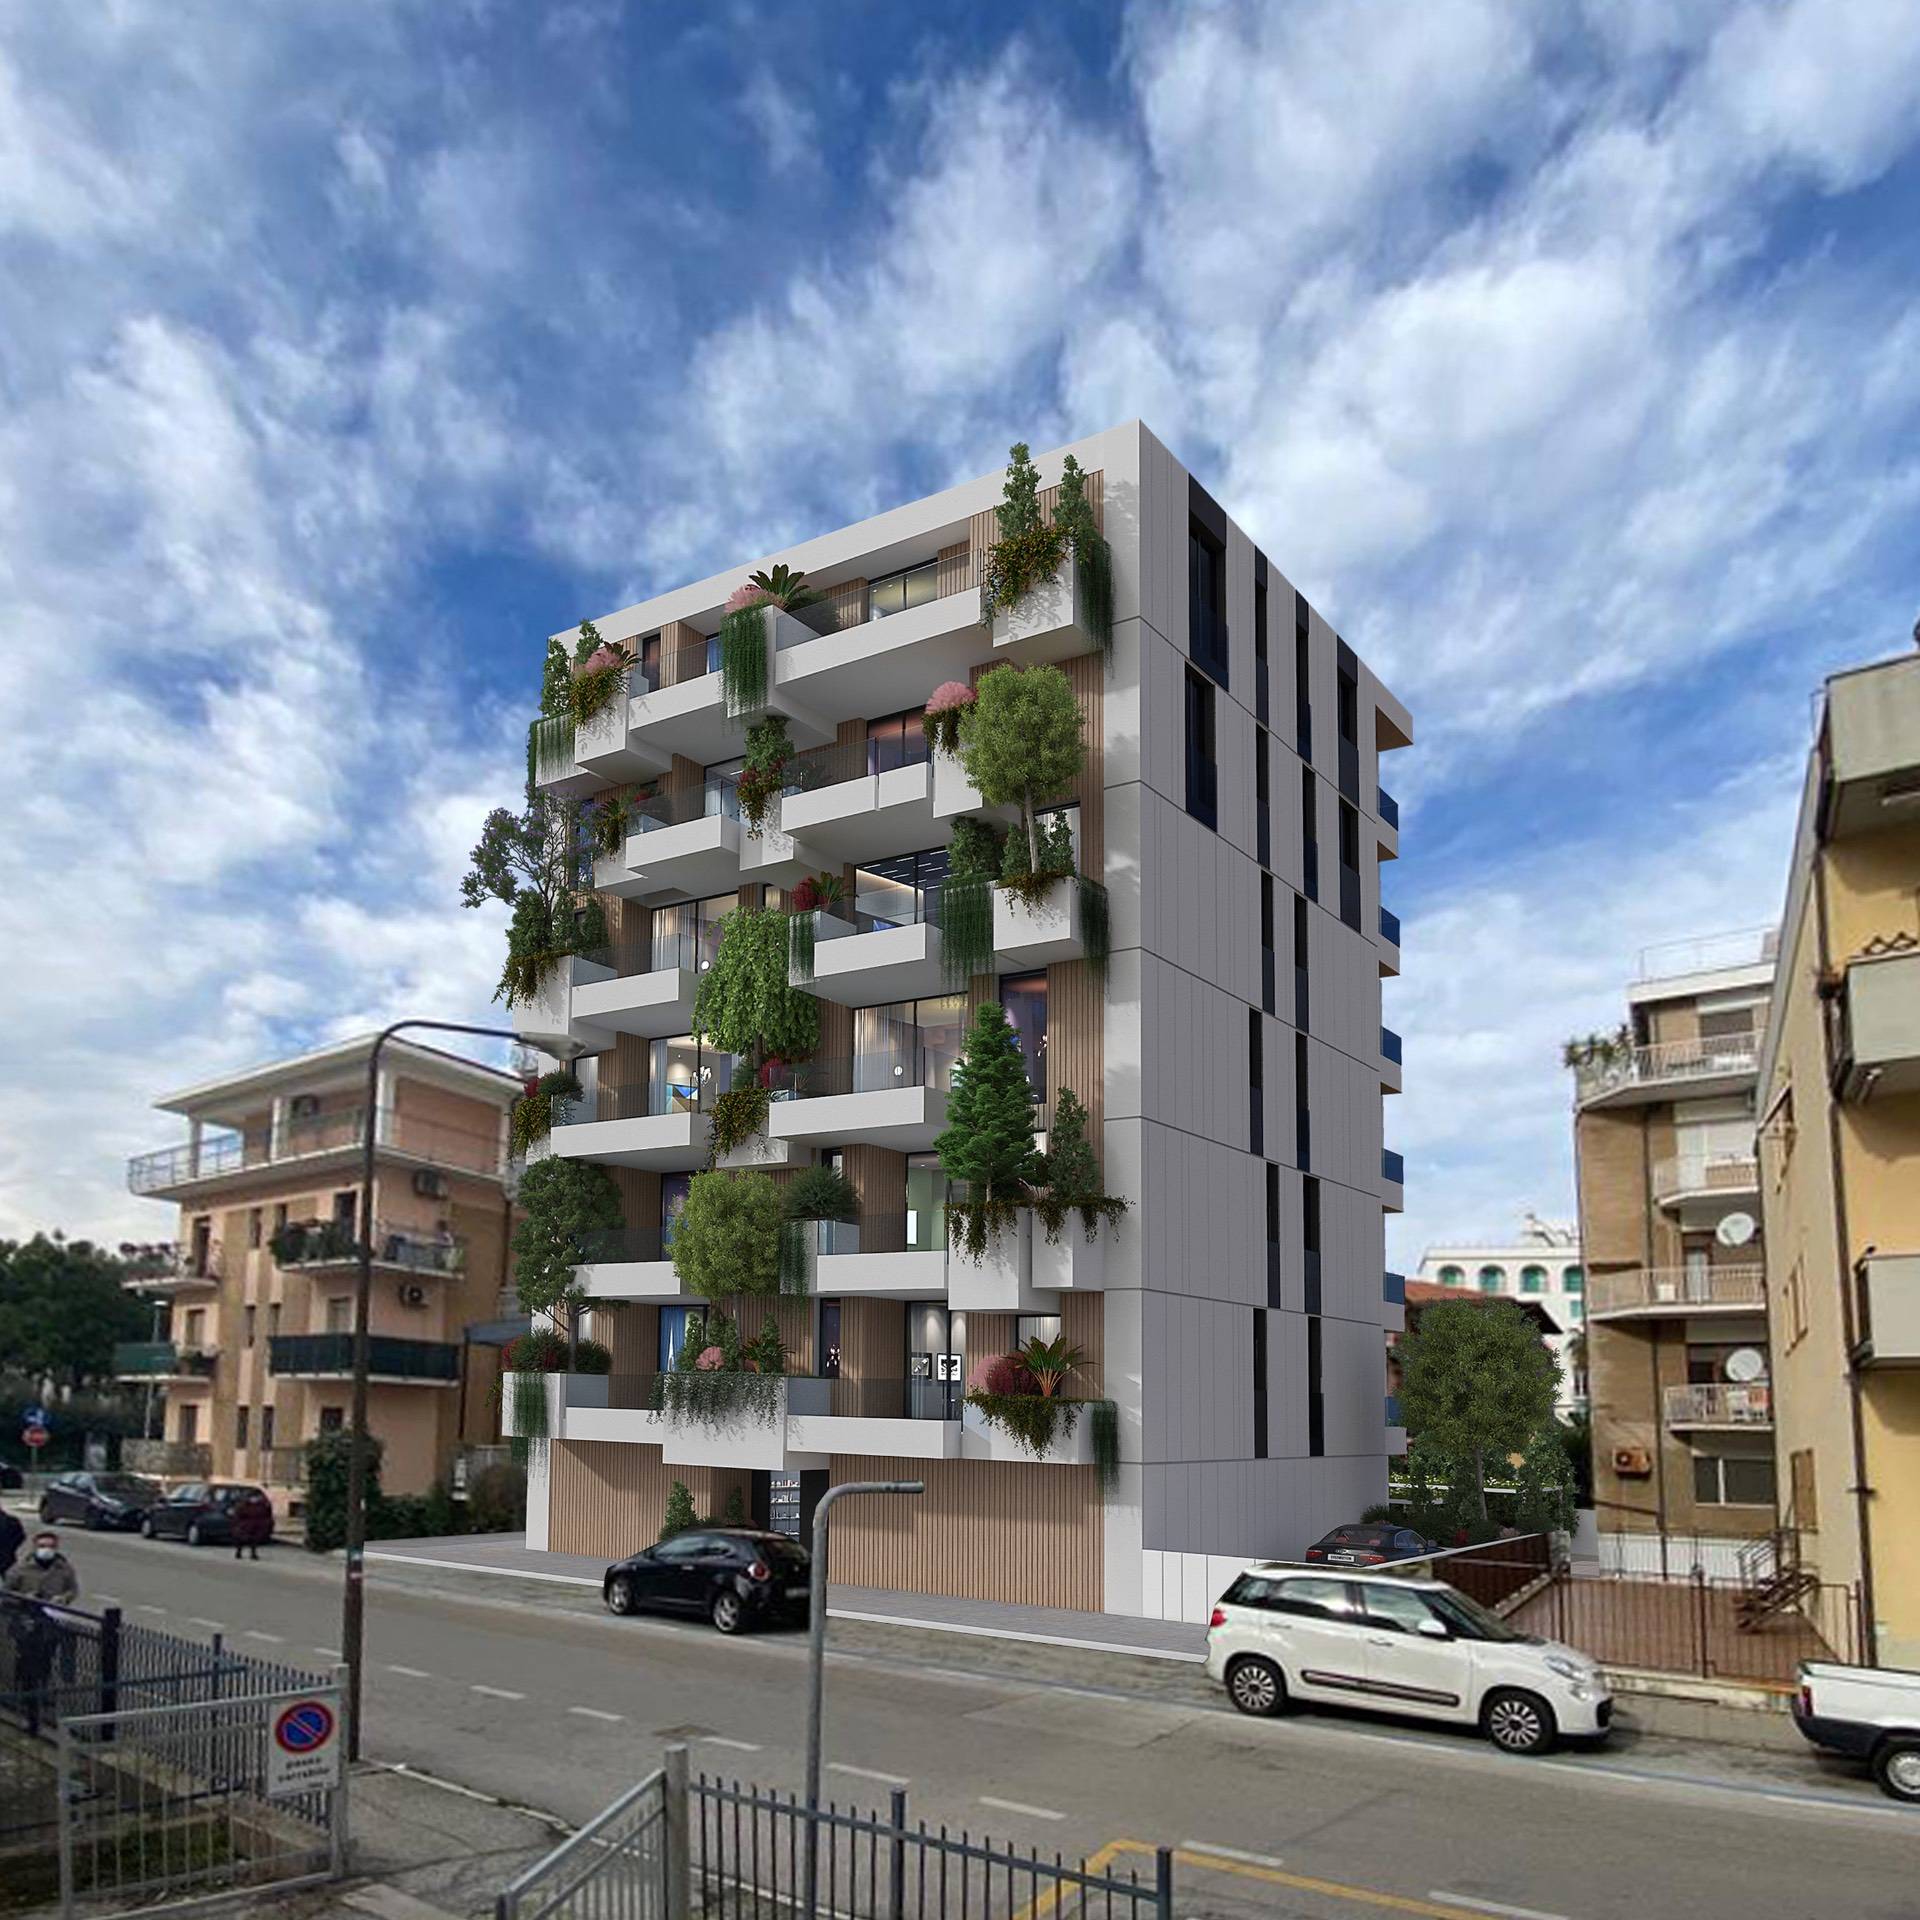 Appartamento in vendita a San Benedetto del Tronto, 2 locali, zona Località: PortoDascolilungomare, prezzo € 230.000 | PortaleAgenzieImmobiliari.it